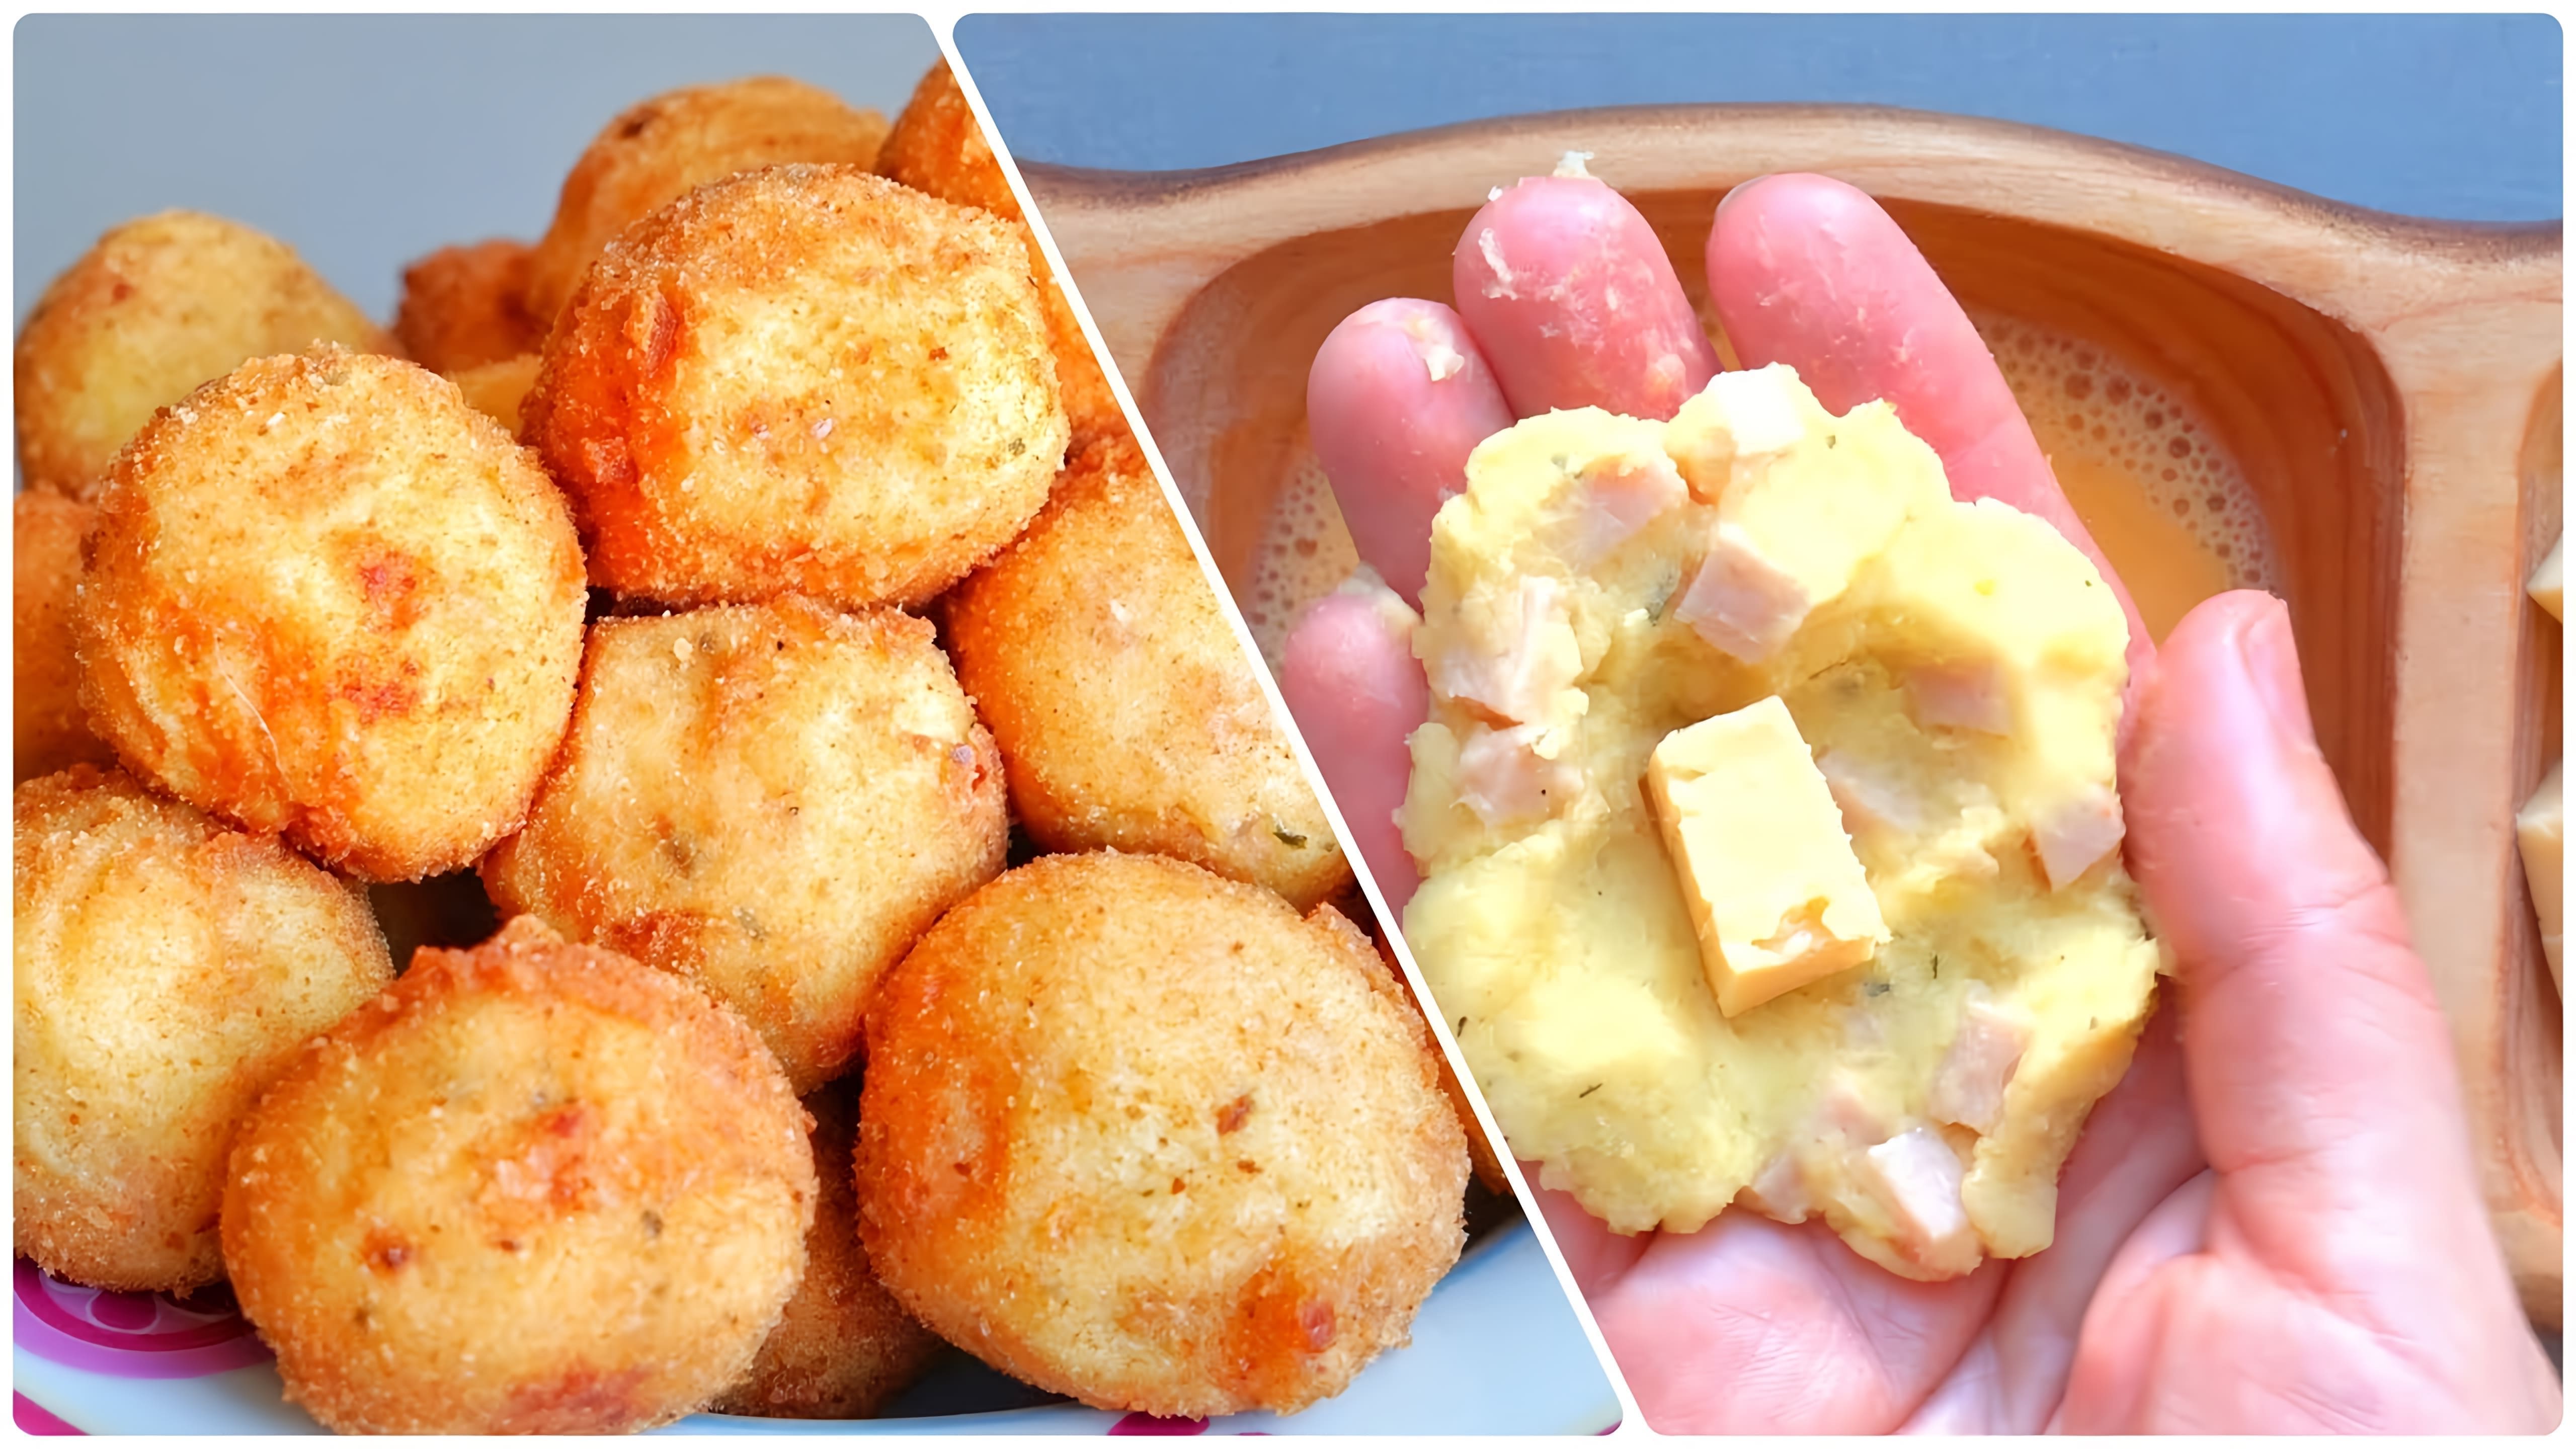 В этом видео демонстрируется рецепт приготовления картофельных шариков с сырной начинкой